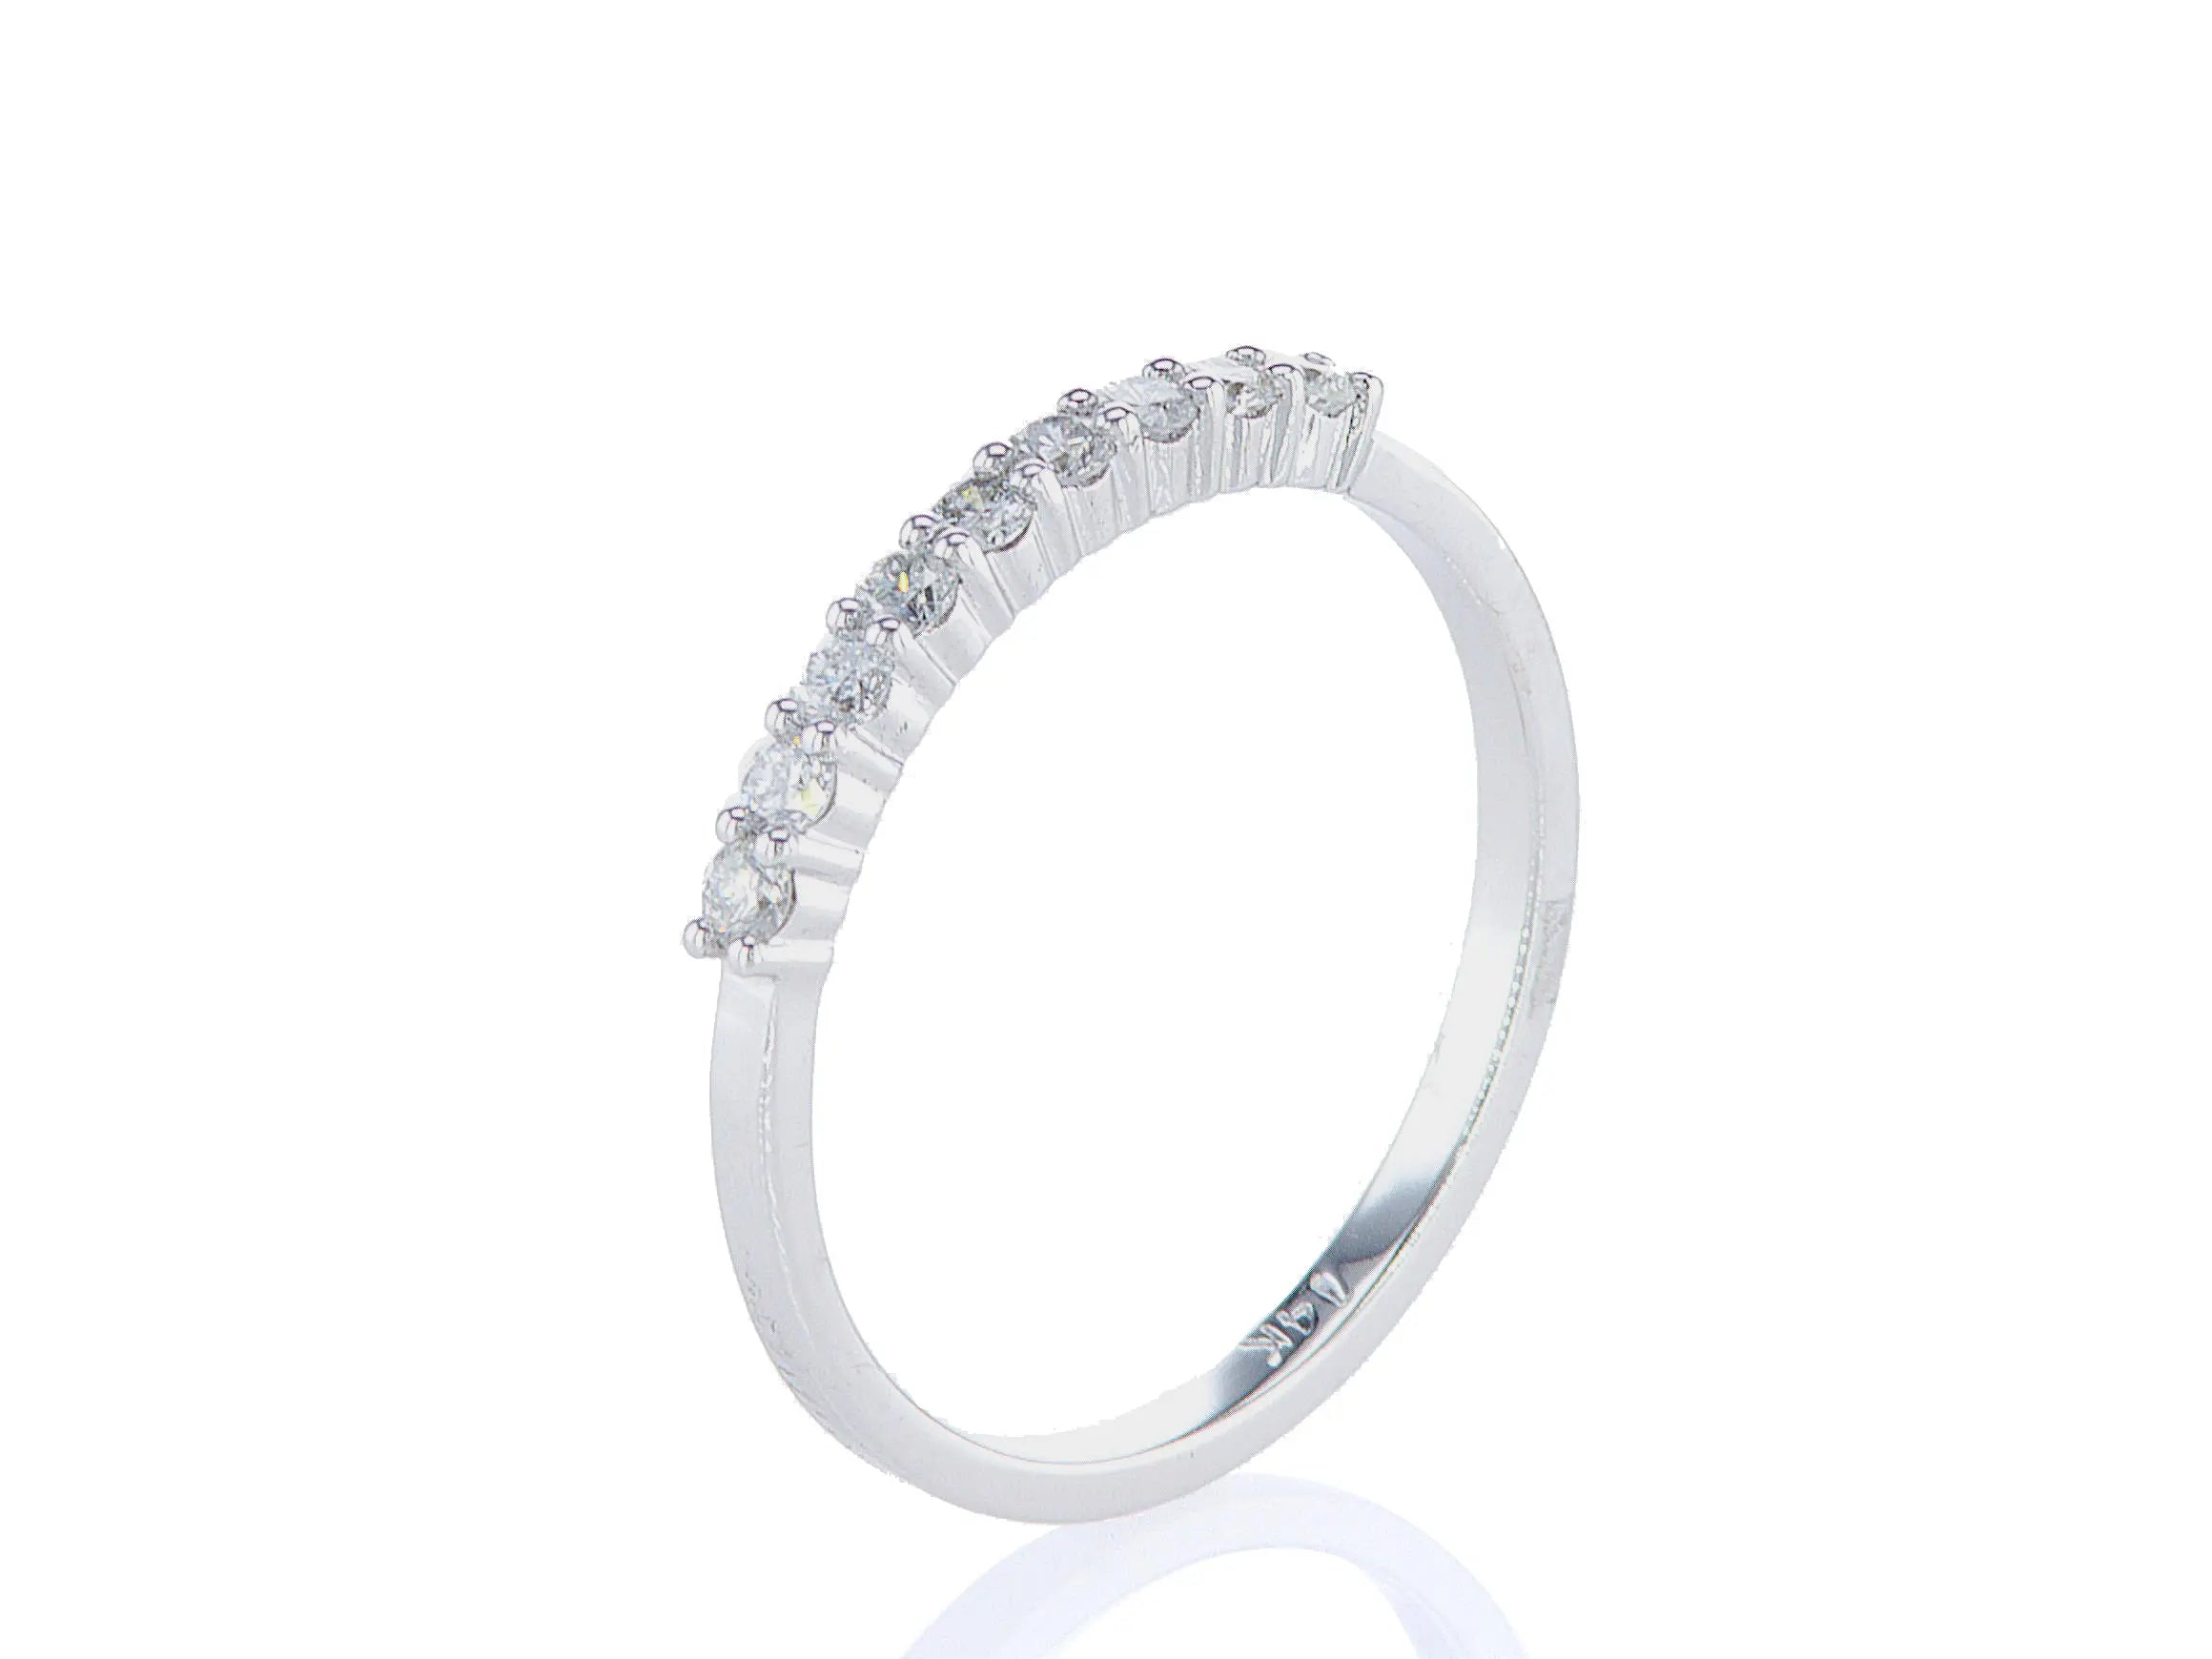 טבעת מעוצבת מרטין Fermond Jewelery